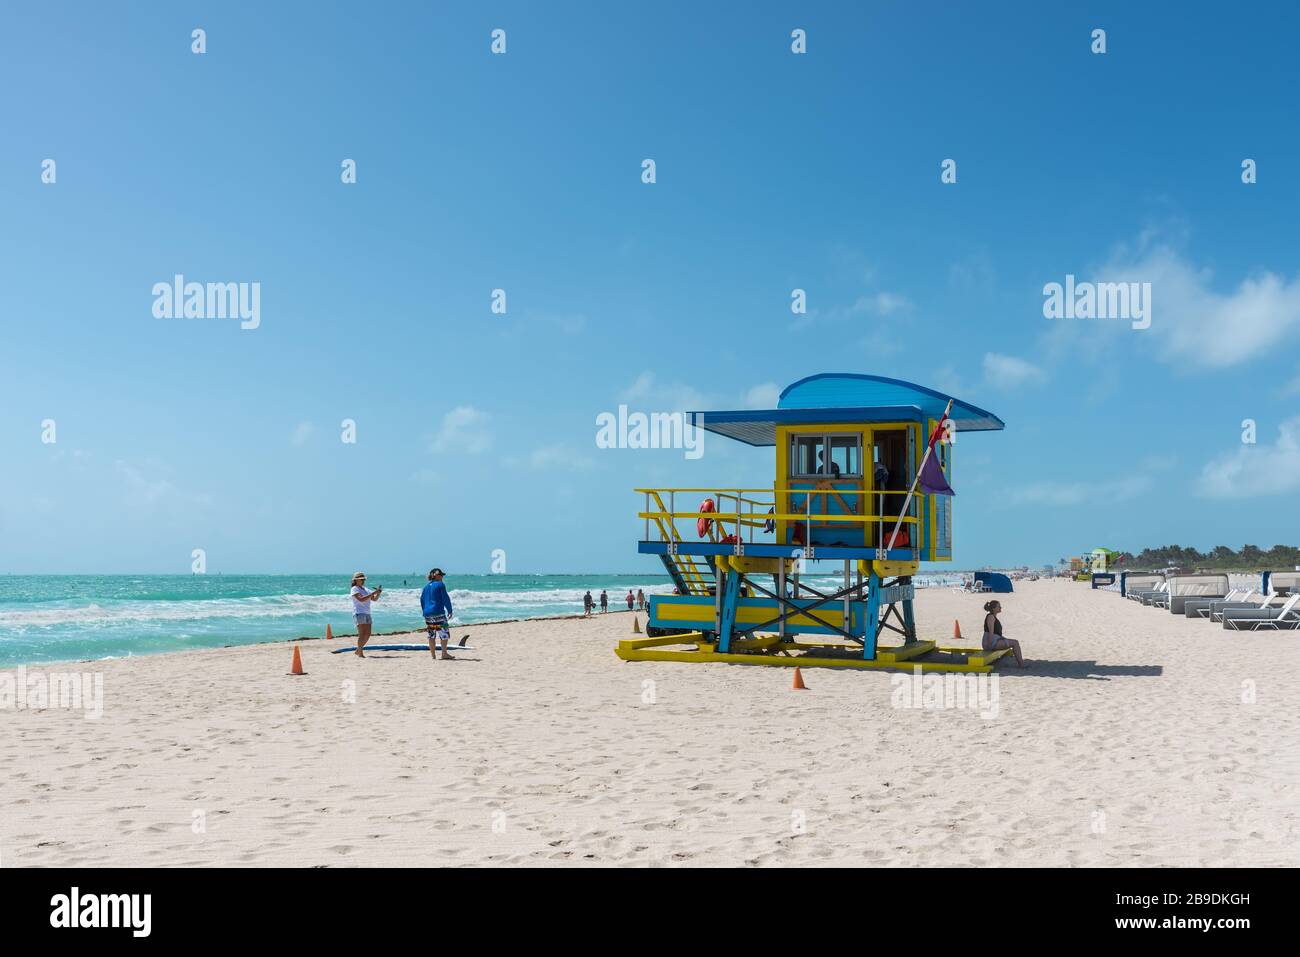 Miami, FL, USA - Le 19 avril 2019 : Le sauveteur tour dans un style Art Déco, avec ciel bleu et l'océan Atlantique à l'arrière-plan. Célèbre billet loca Banque D'Images